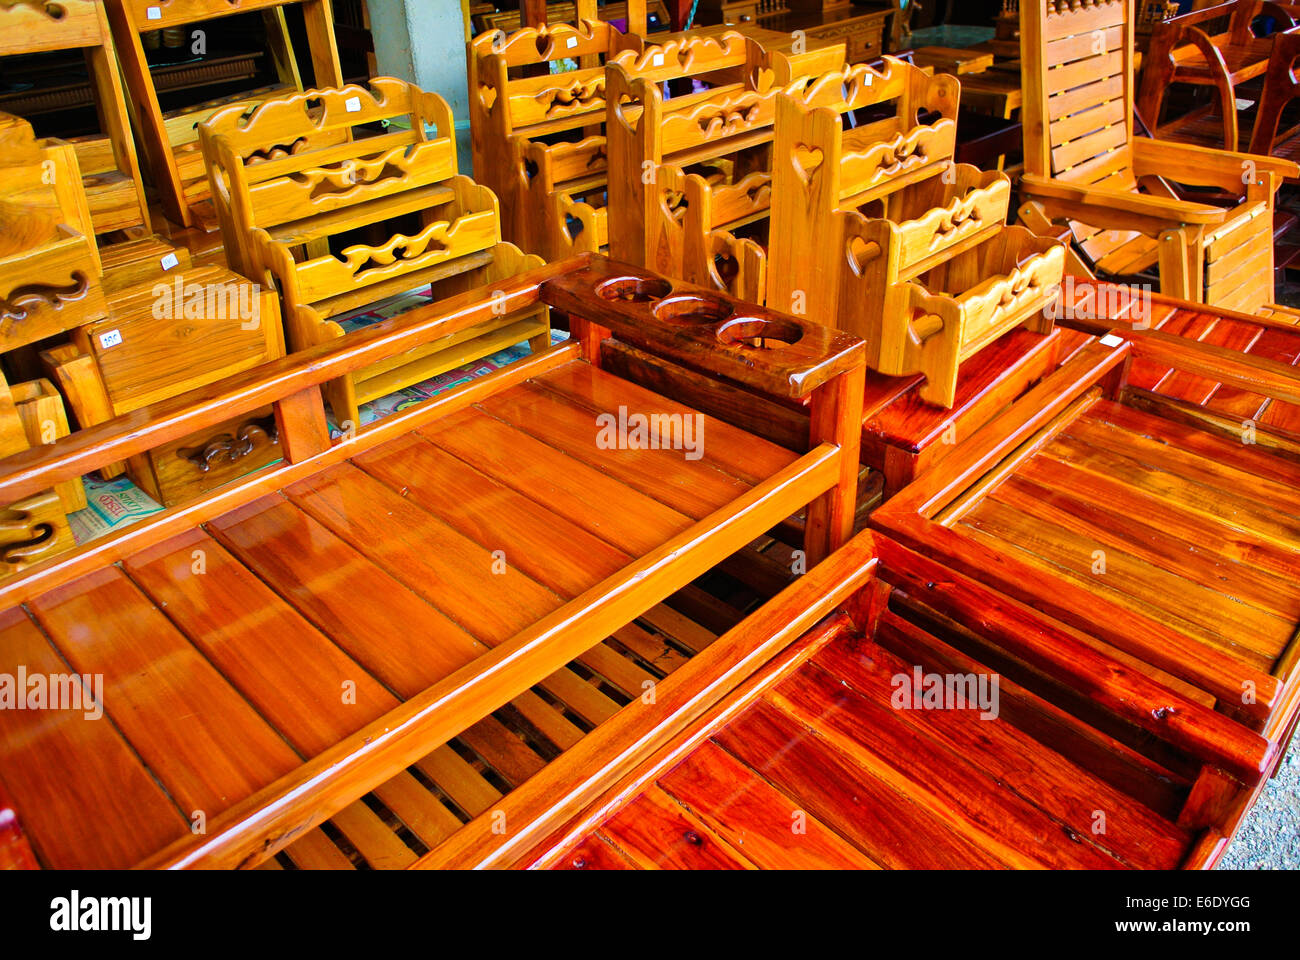 Meubles en bois typiquement thaïlandais Thaïlande Photo Stock - Alamy